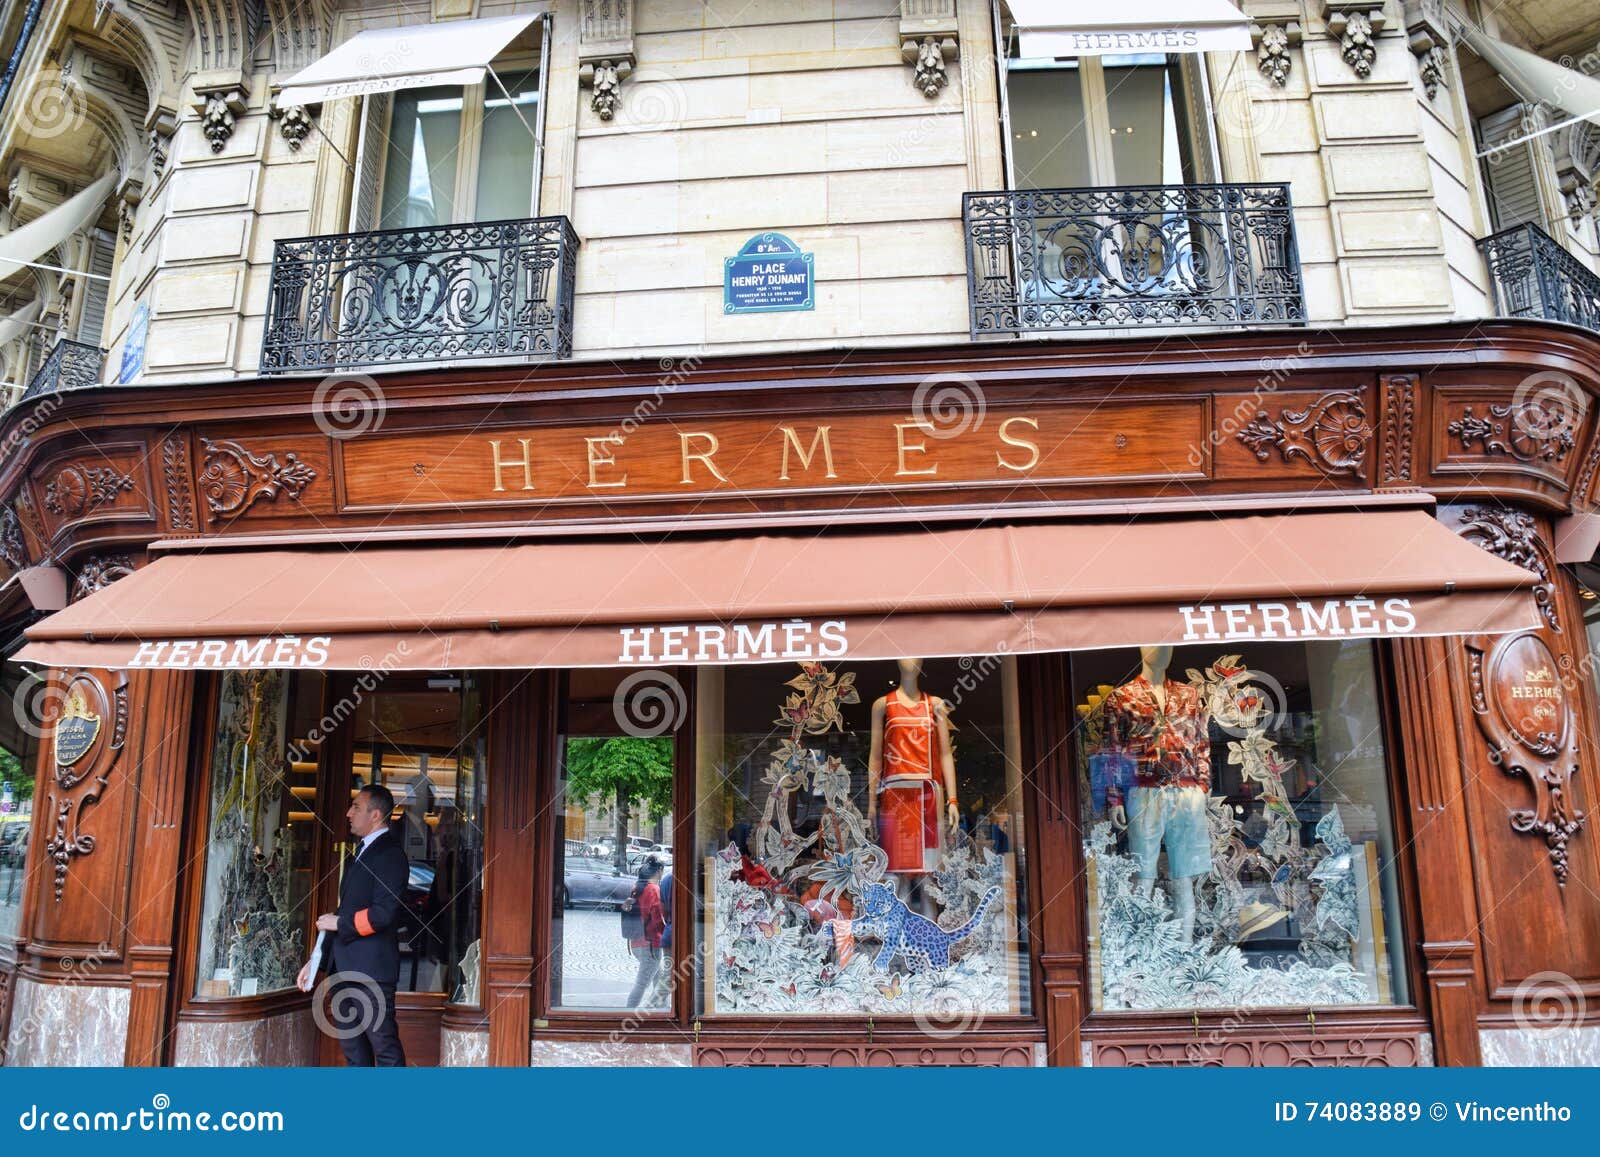 hermes of paris